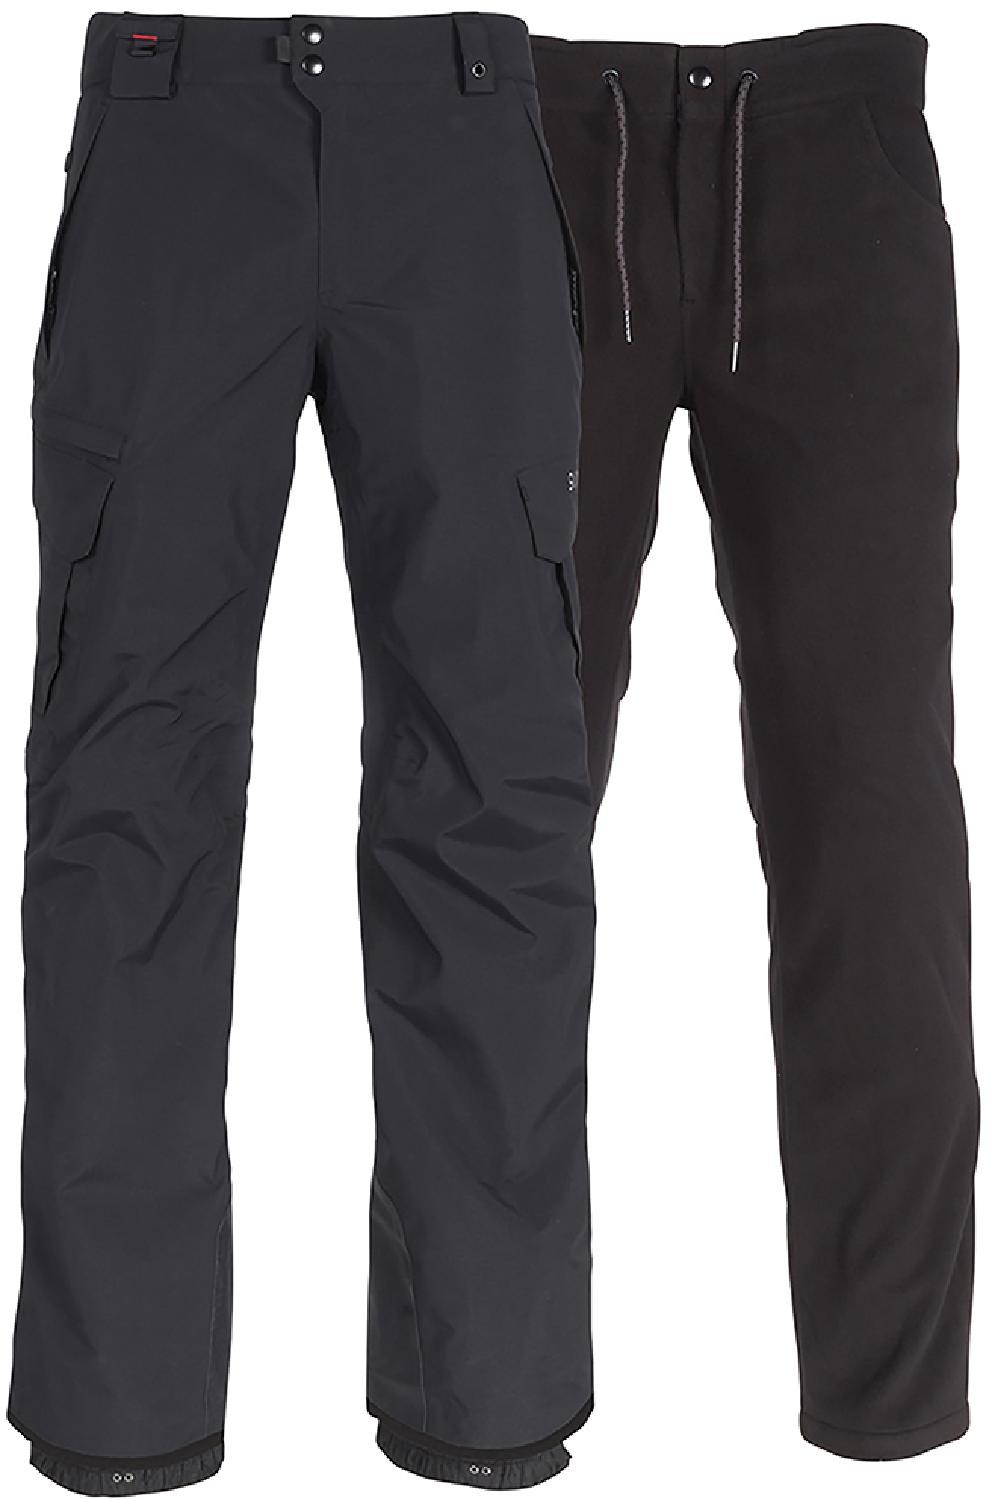 Зимние брюки-карго Smarty 3-в-1 — мужские 686, черный брюки 686 smarty 3 in 1 cargo цвет charcoal